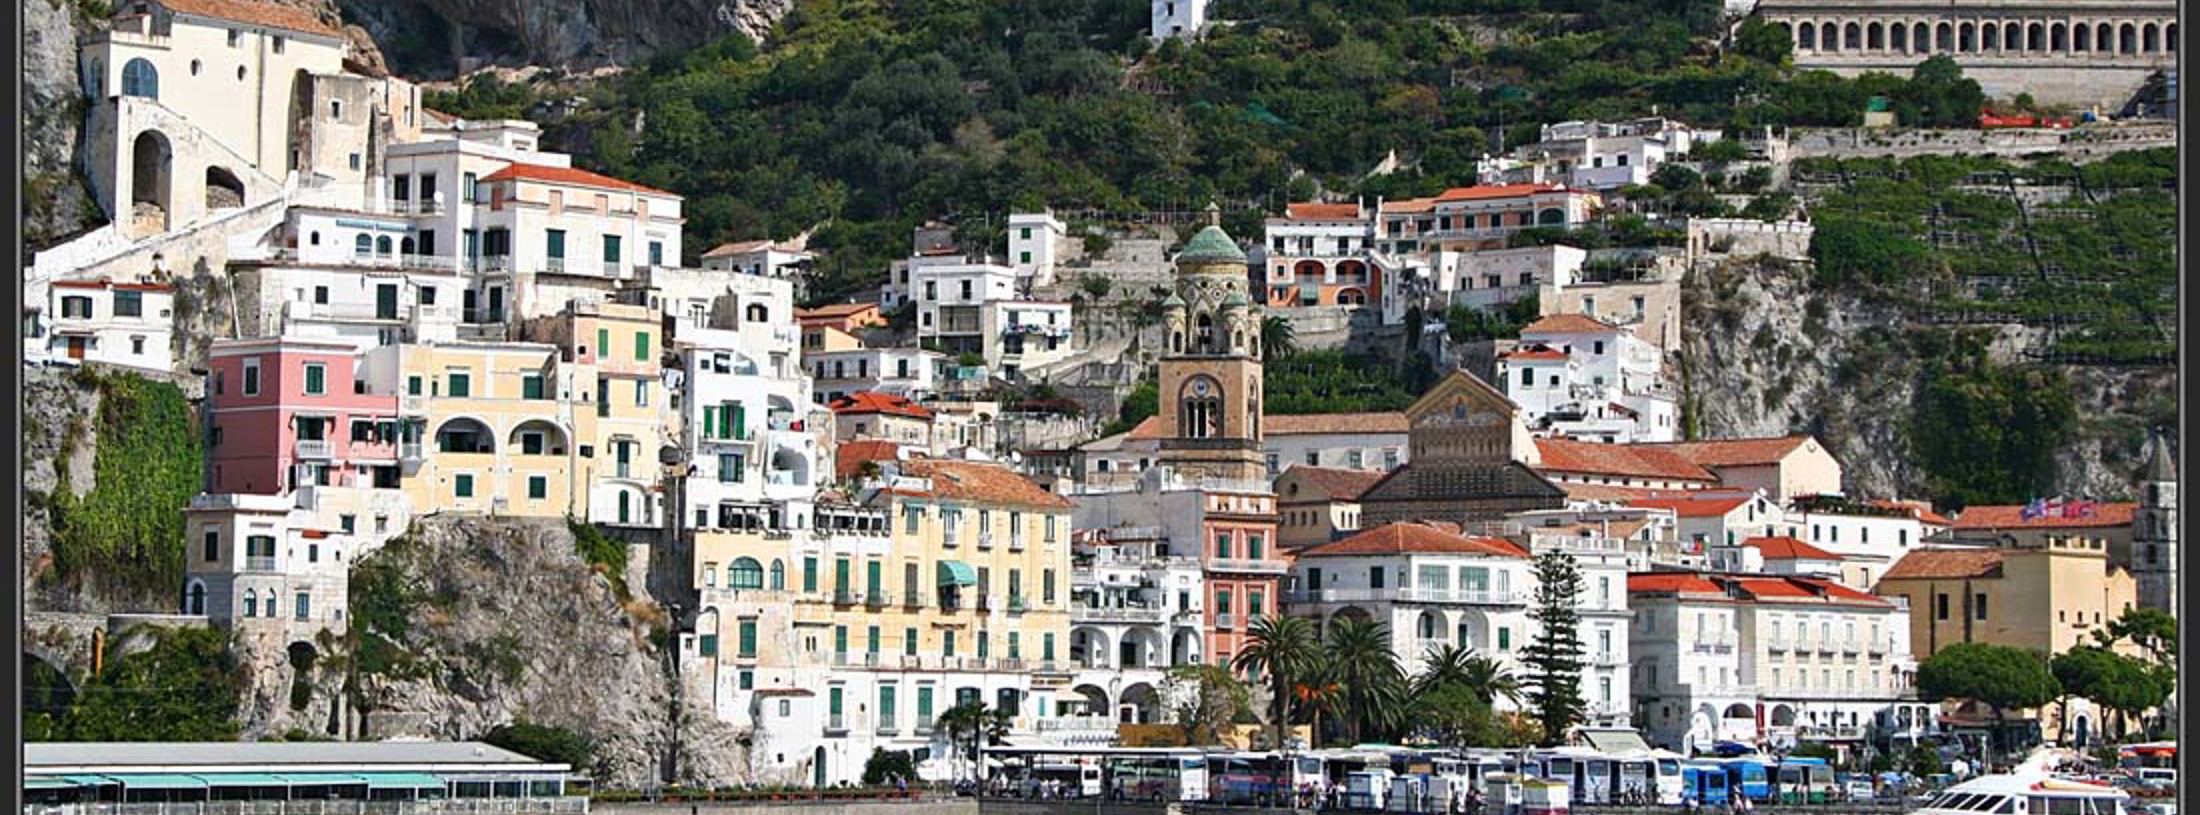 Kampanien med Sorrento och Amalfi